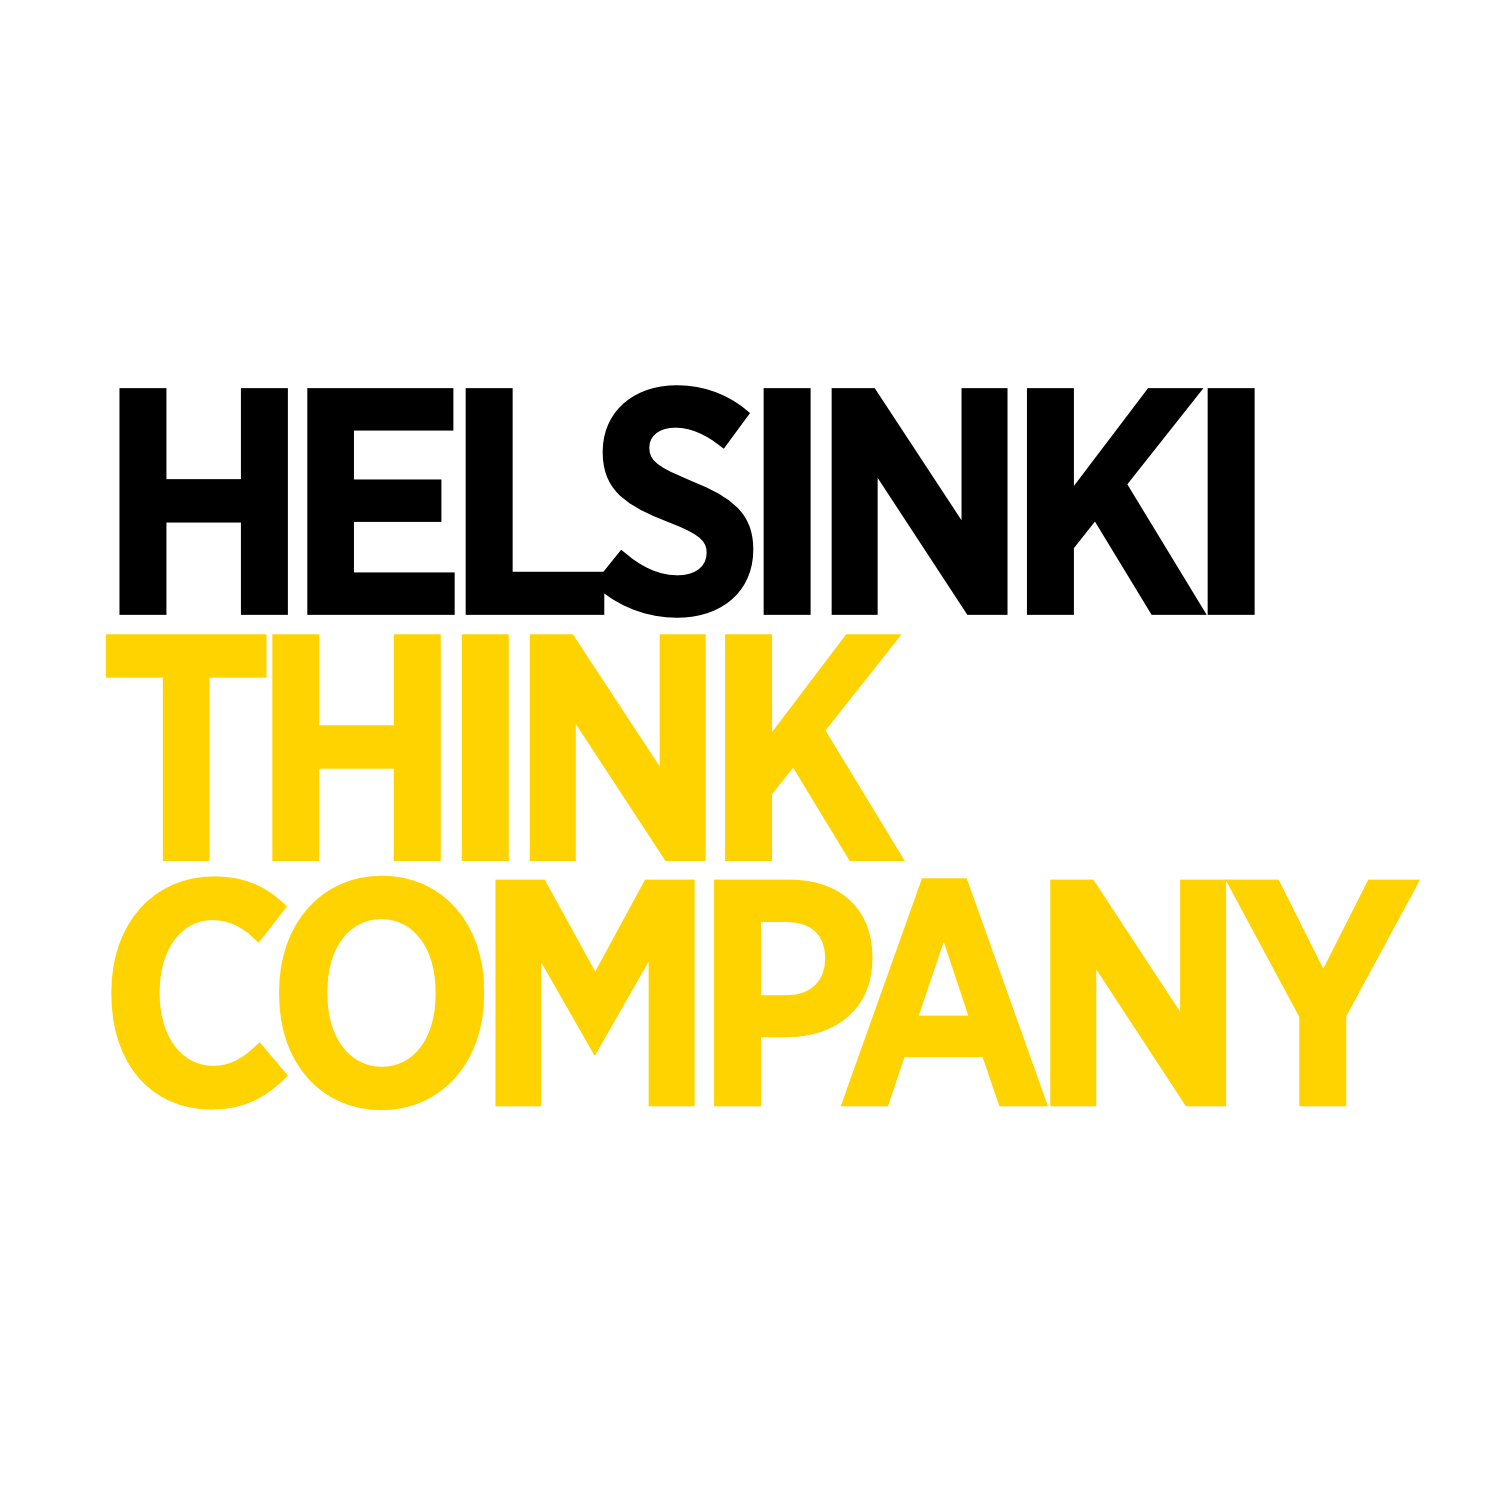 Helsinki Think Company - Center